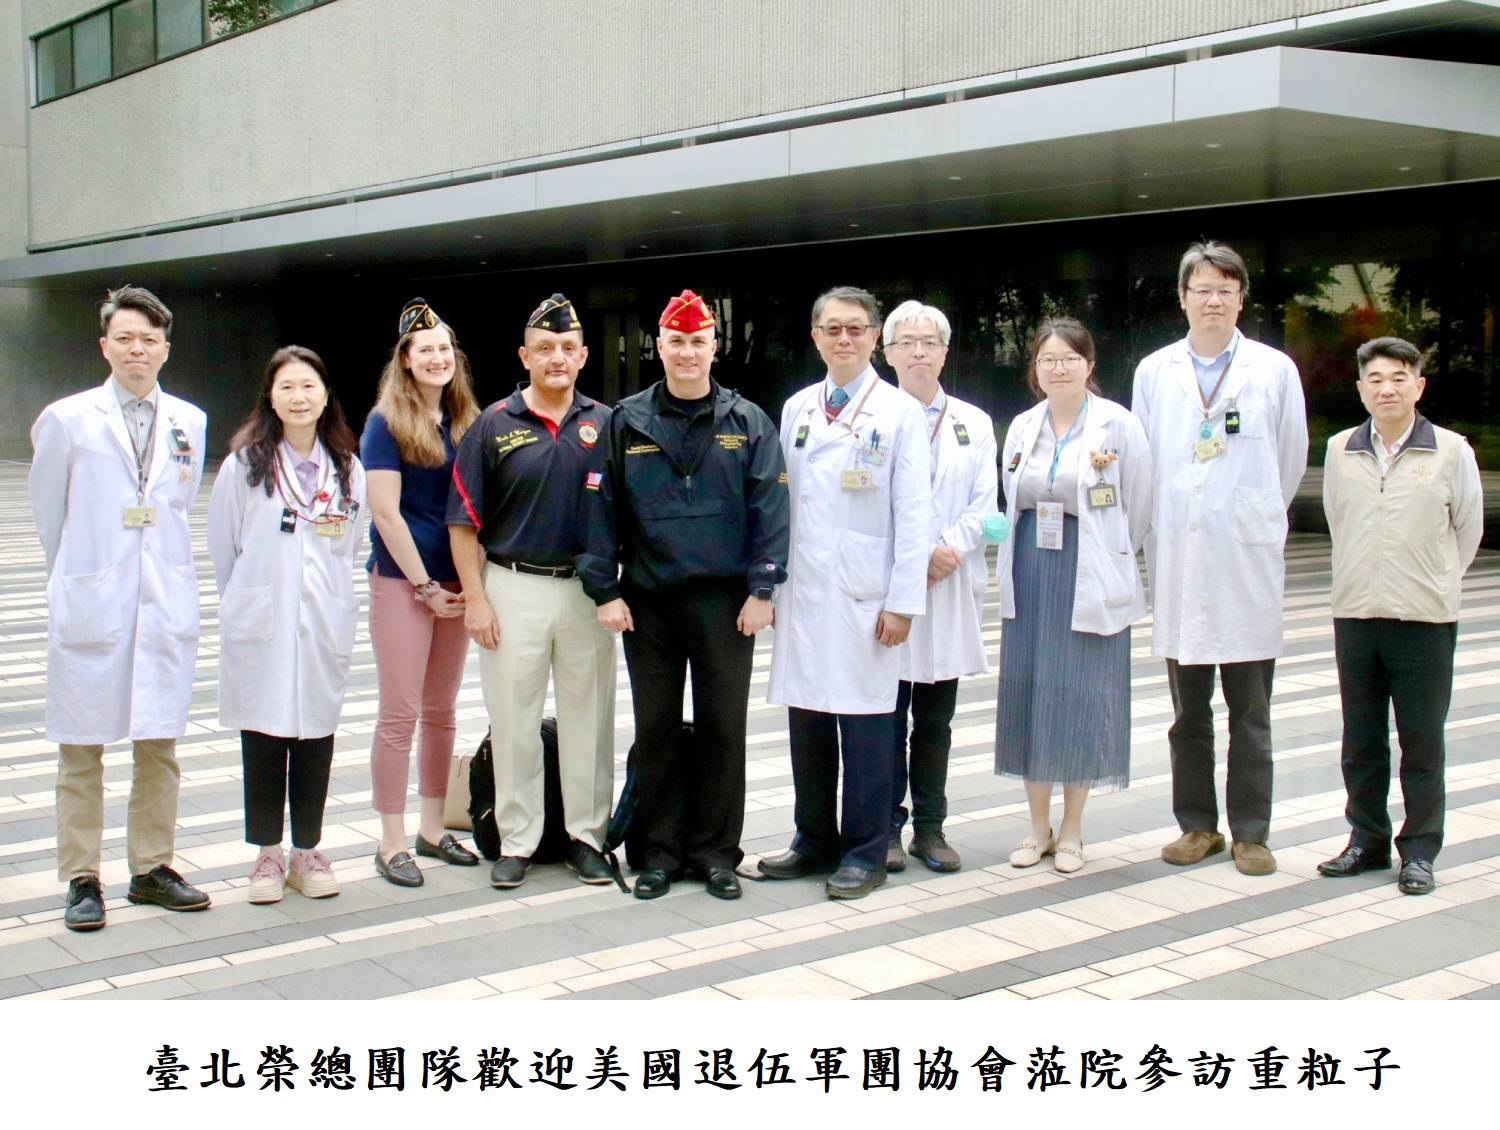 臺北榮總團隊歡迎美國退伍軍團協會蒞院參訪重粒子